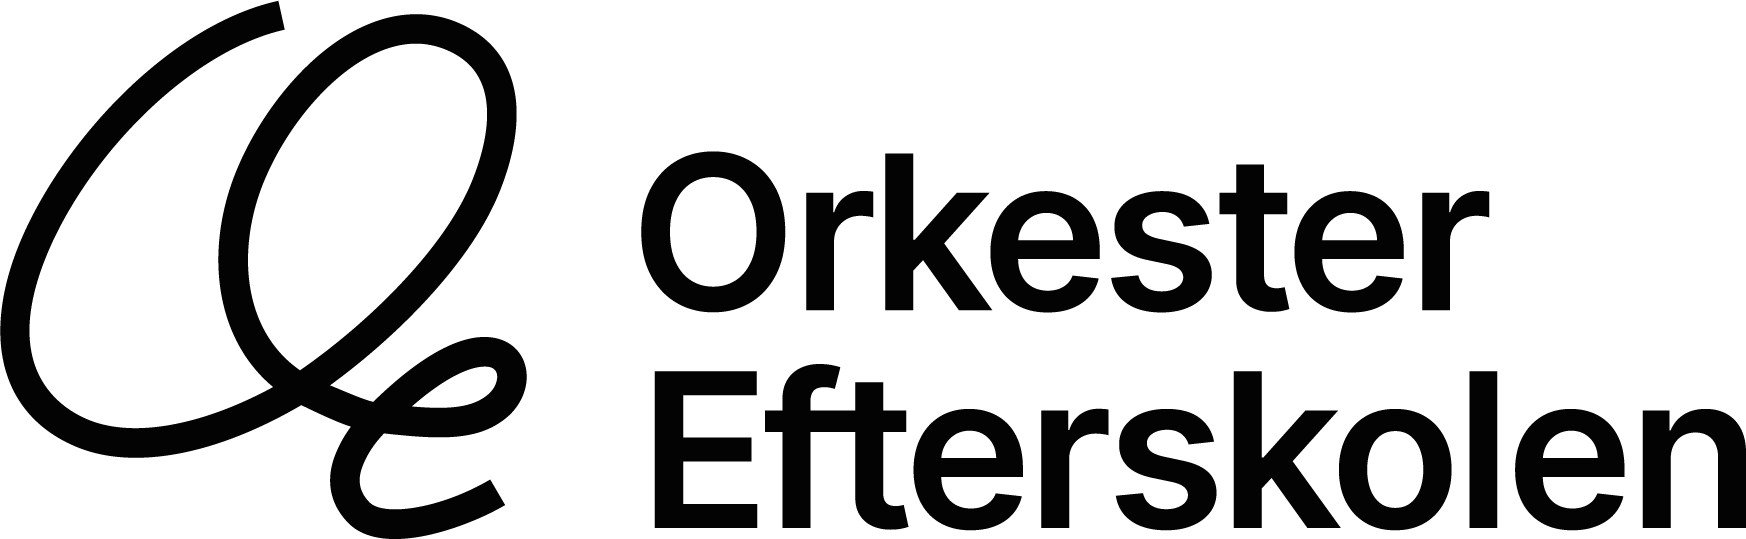 Orkesterefterskolen-logotype-2022